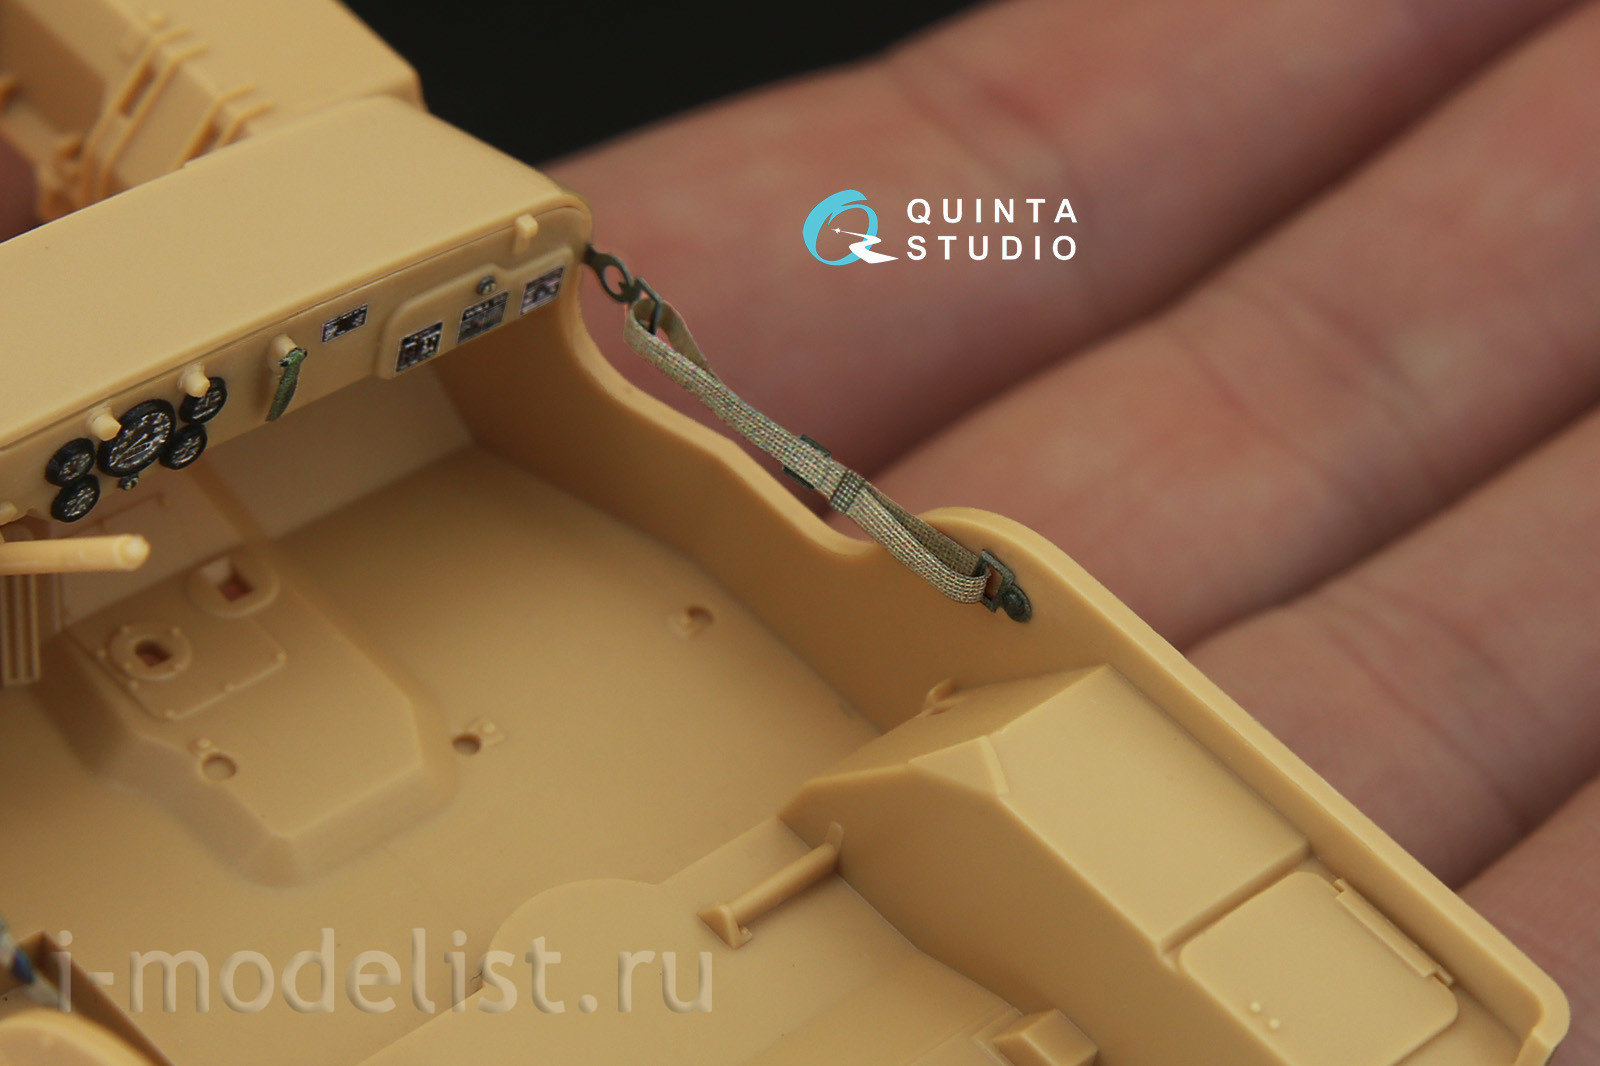 QD35018 Quinta Studio 1/35 3D Декаль интерьера кабины для Willys MB (для любых моделей)